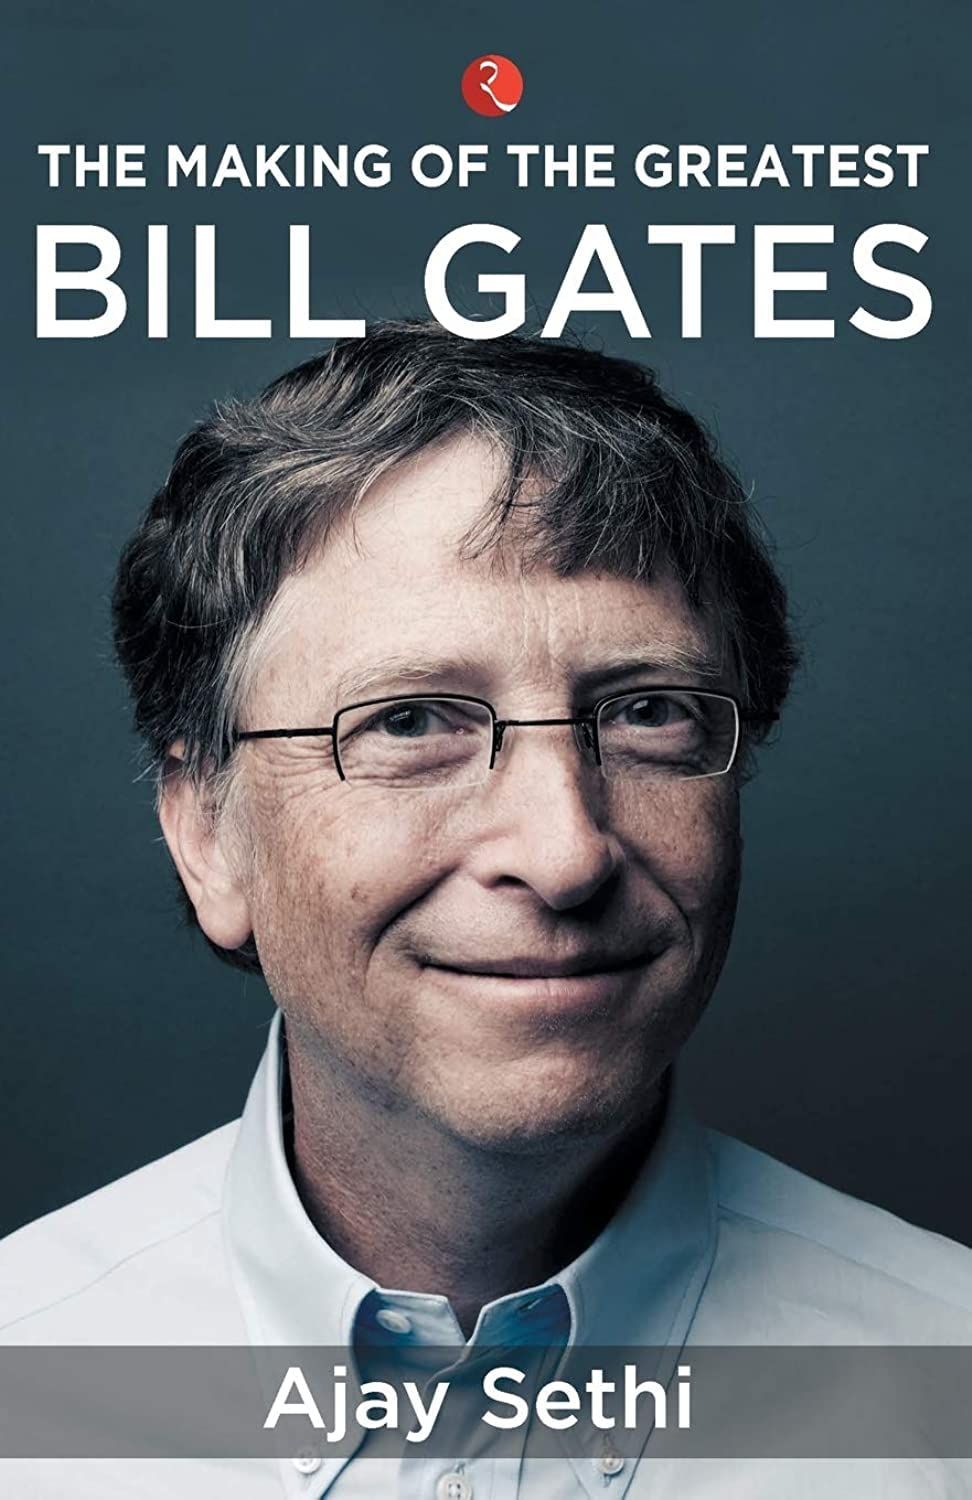 Pénzprogram: Bill Gates - Hogyan változtatta meg egy különc a világot? online film